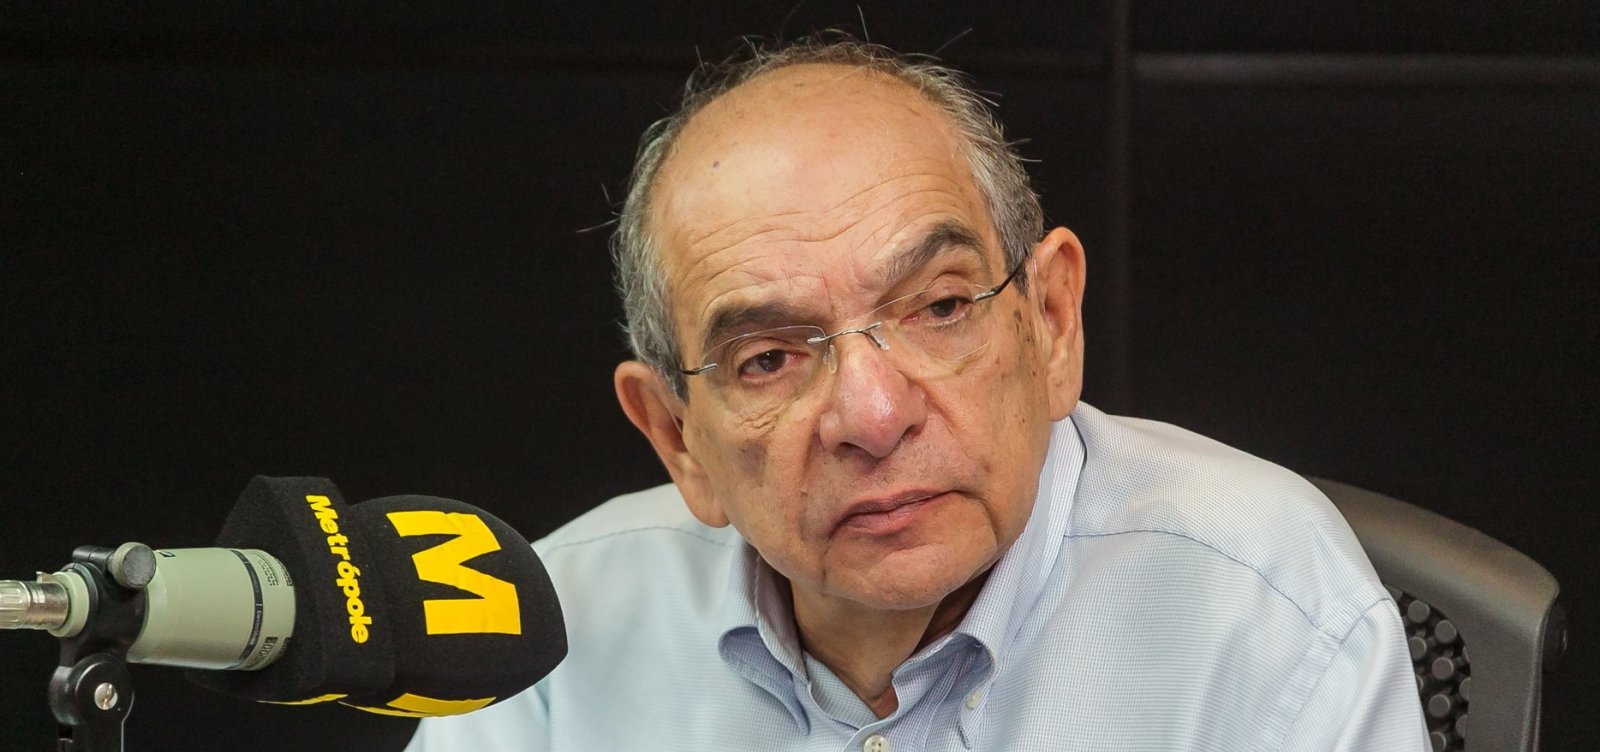 MK se diz 'decepcionado' com Nilo e afirma que Carlos Bolsonaro 'acredita numa ditadura', ouça